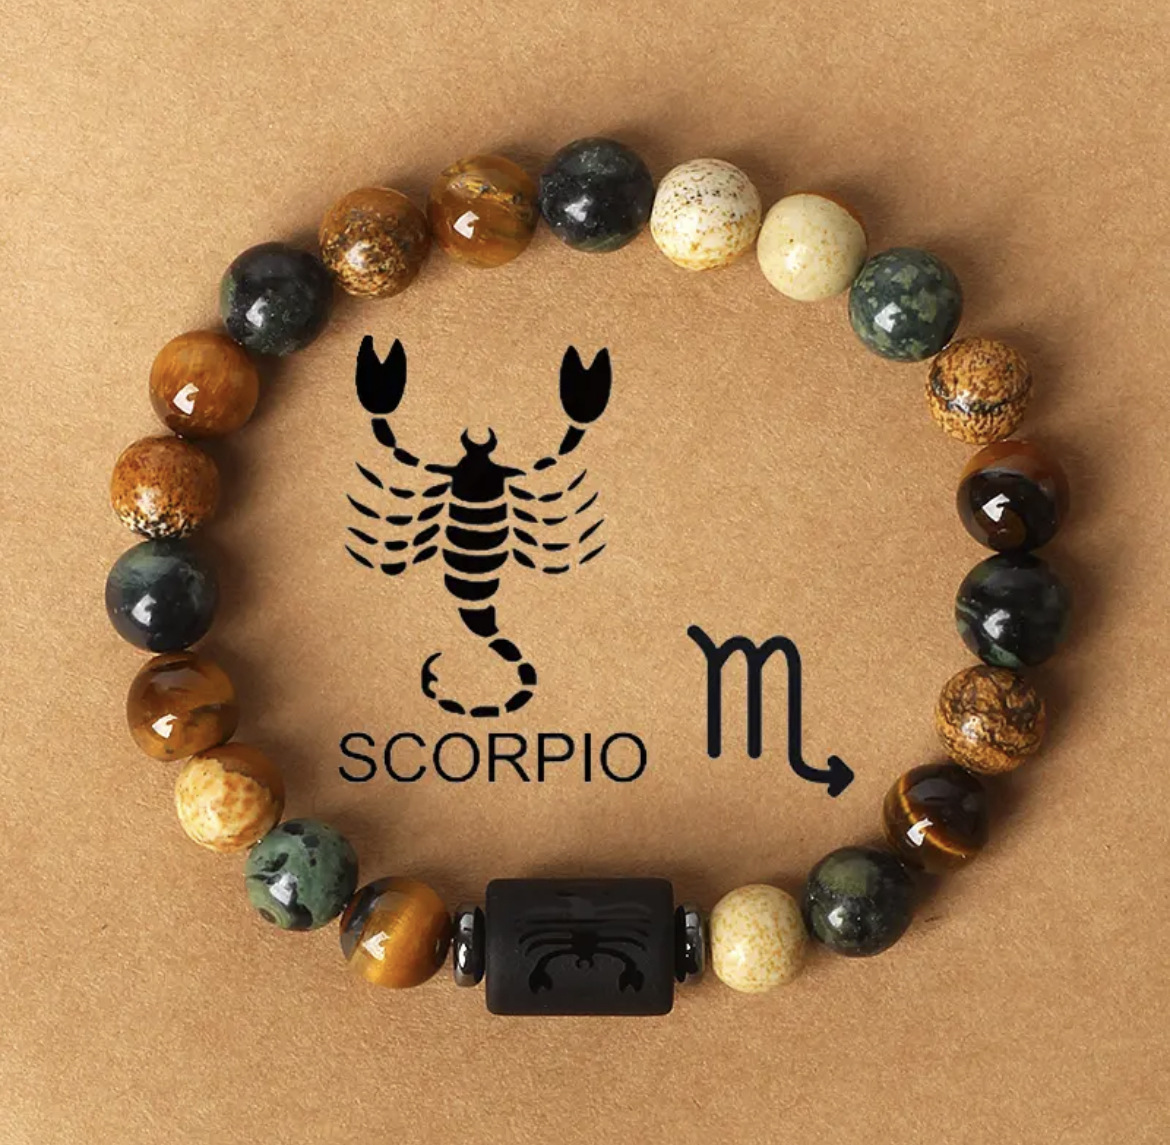 5 Scorpio